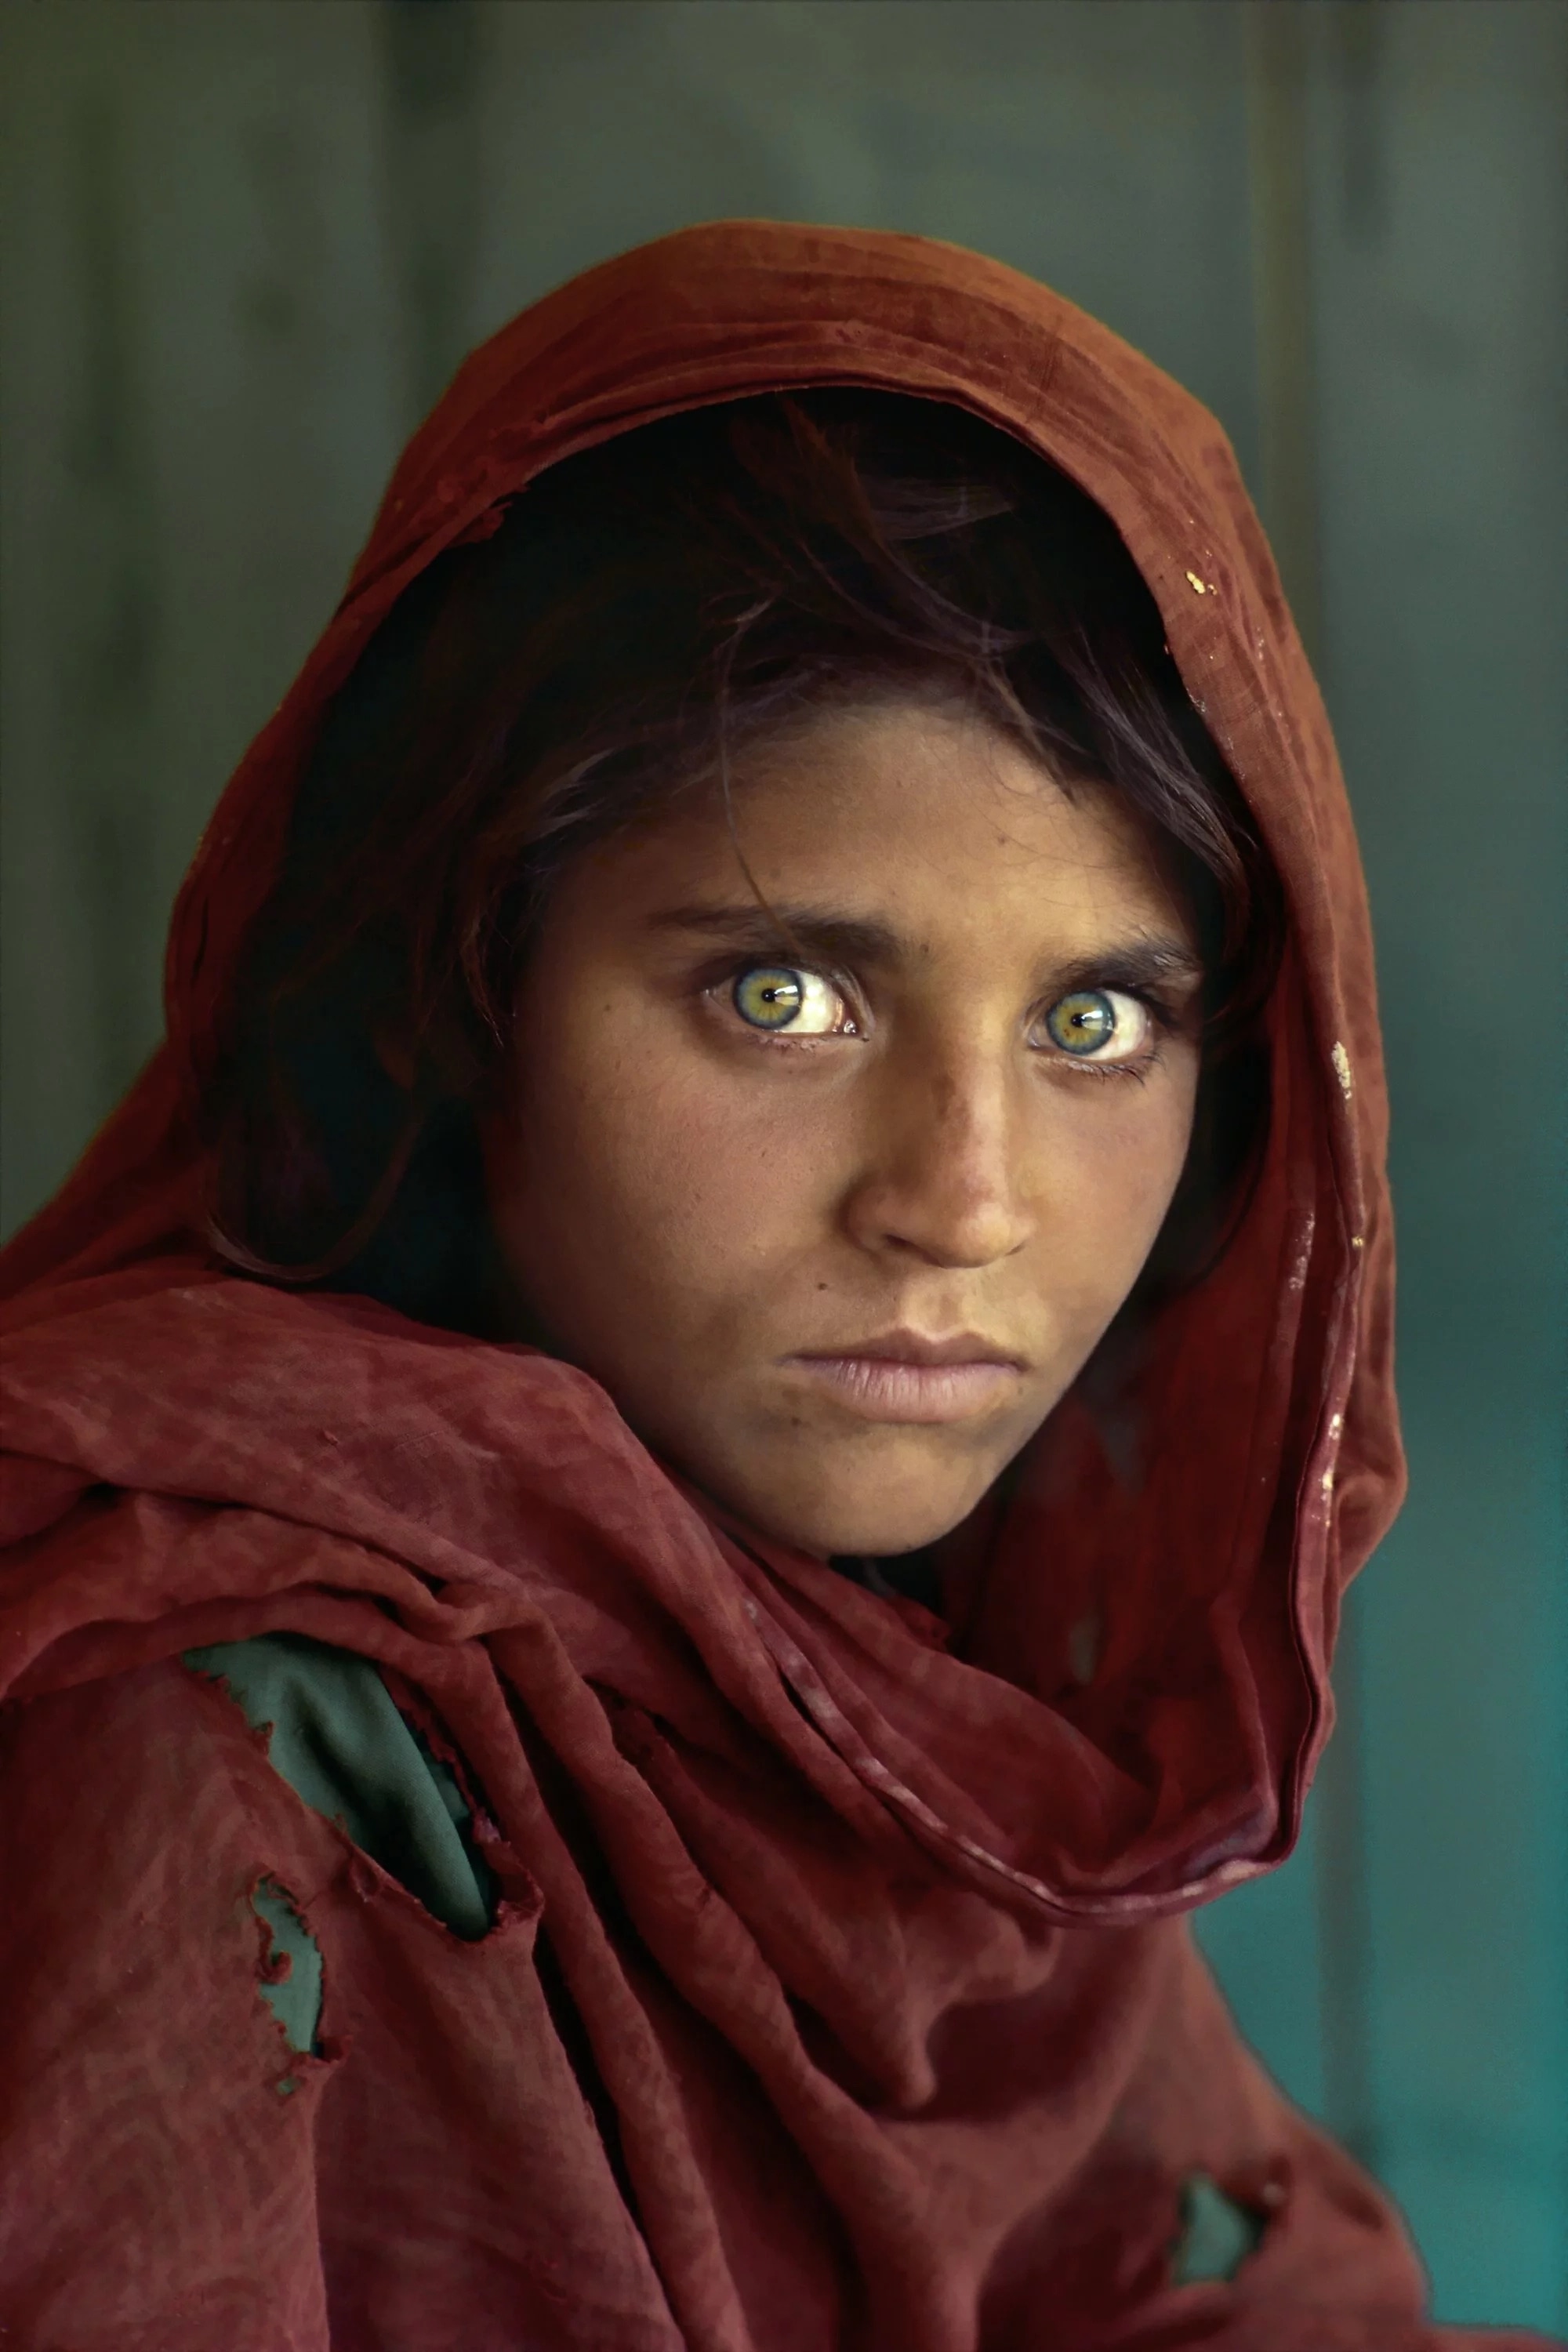 Стив МакКарри. Шарбат Гула. Афганская девочка. Лагерь беженцев Насир-Баг недалеко от Пешаварa, Пакистан, 1984
